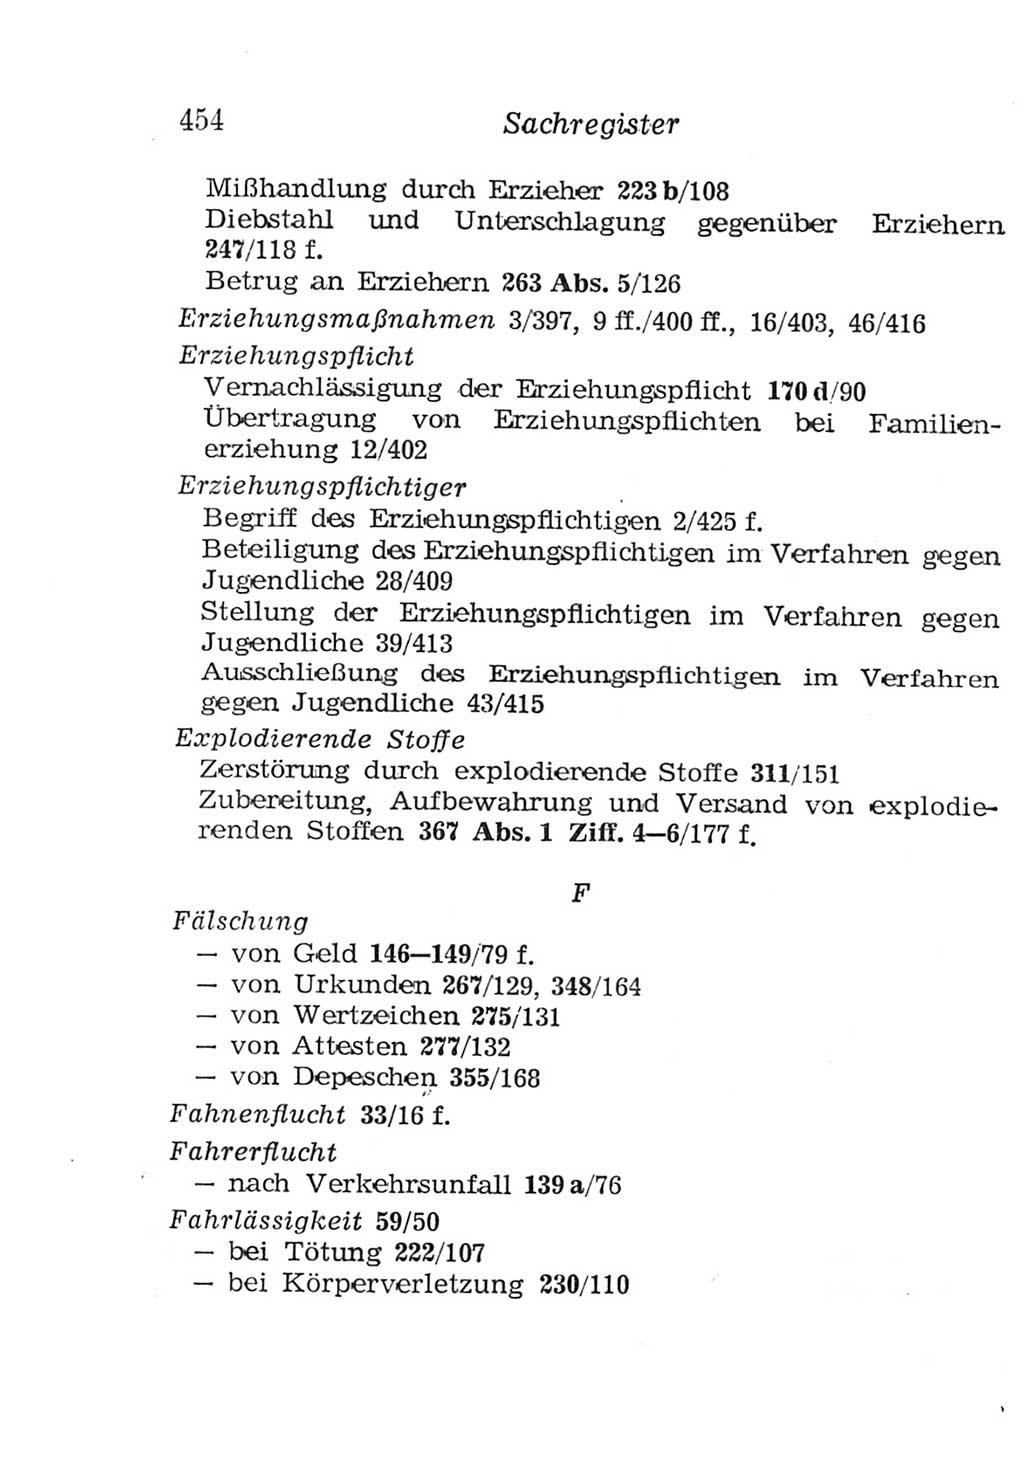 Strafgesetzbuch (StGB) und andere Strafgesetze [Deutsche Demokratische Republik (DDR)] 1957, Seite 454 (StGB Strafges. DDR 1957, S. 454)